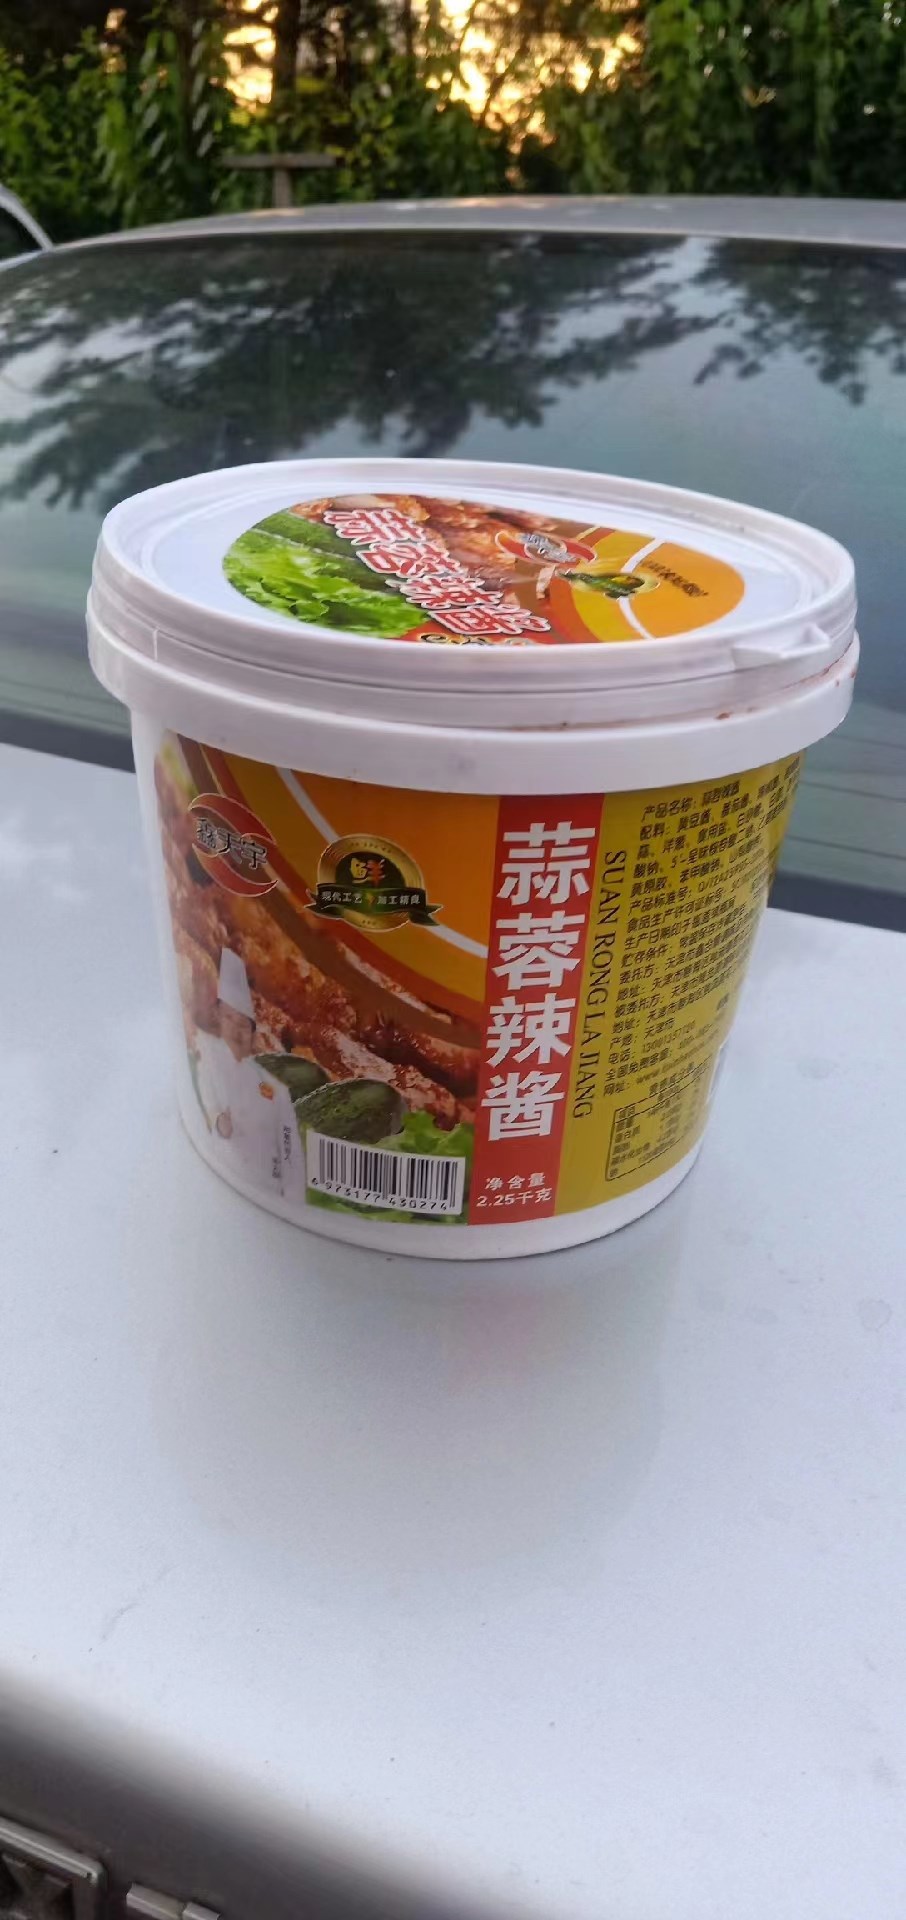 鑫合顺蒜蓉辣酱2.25kg